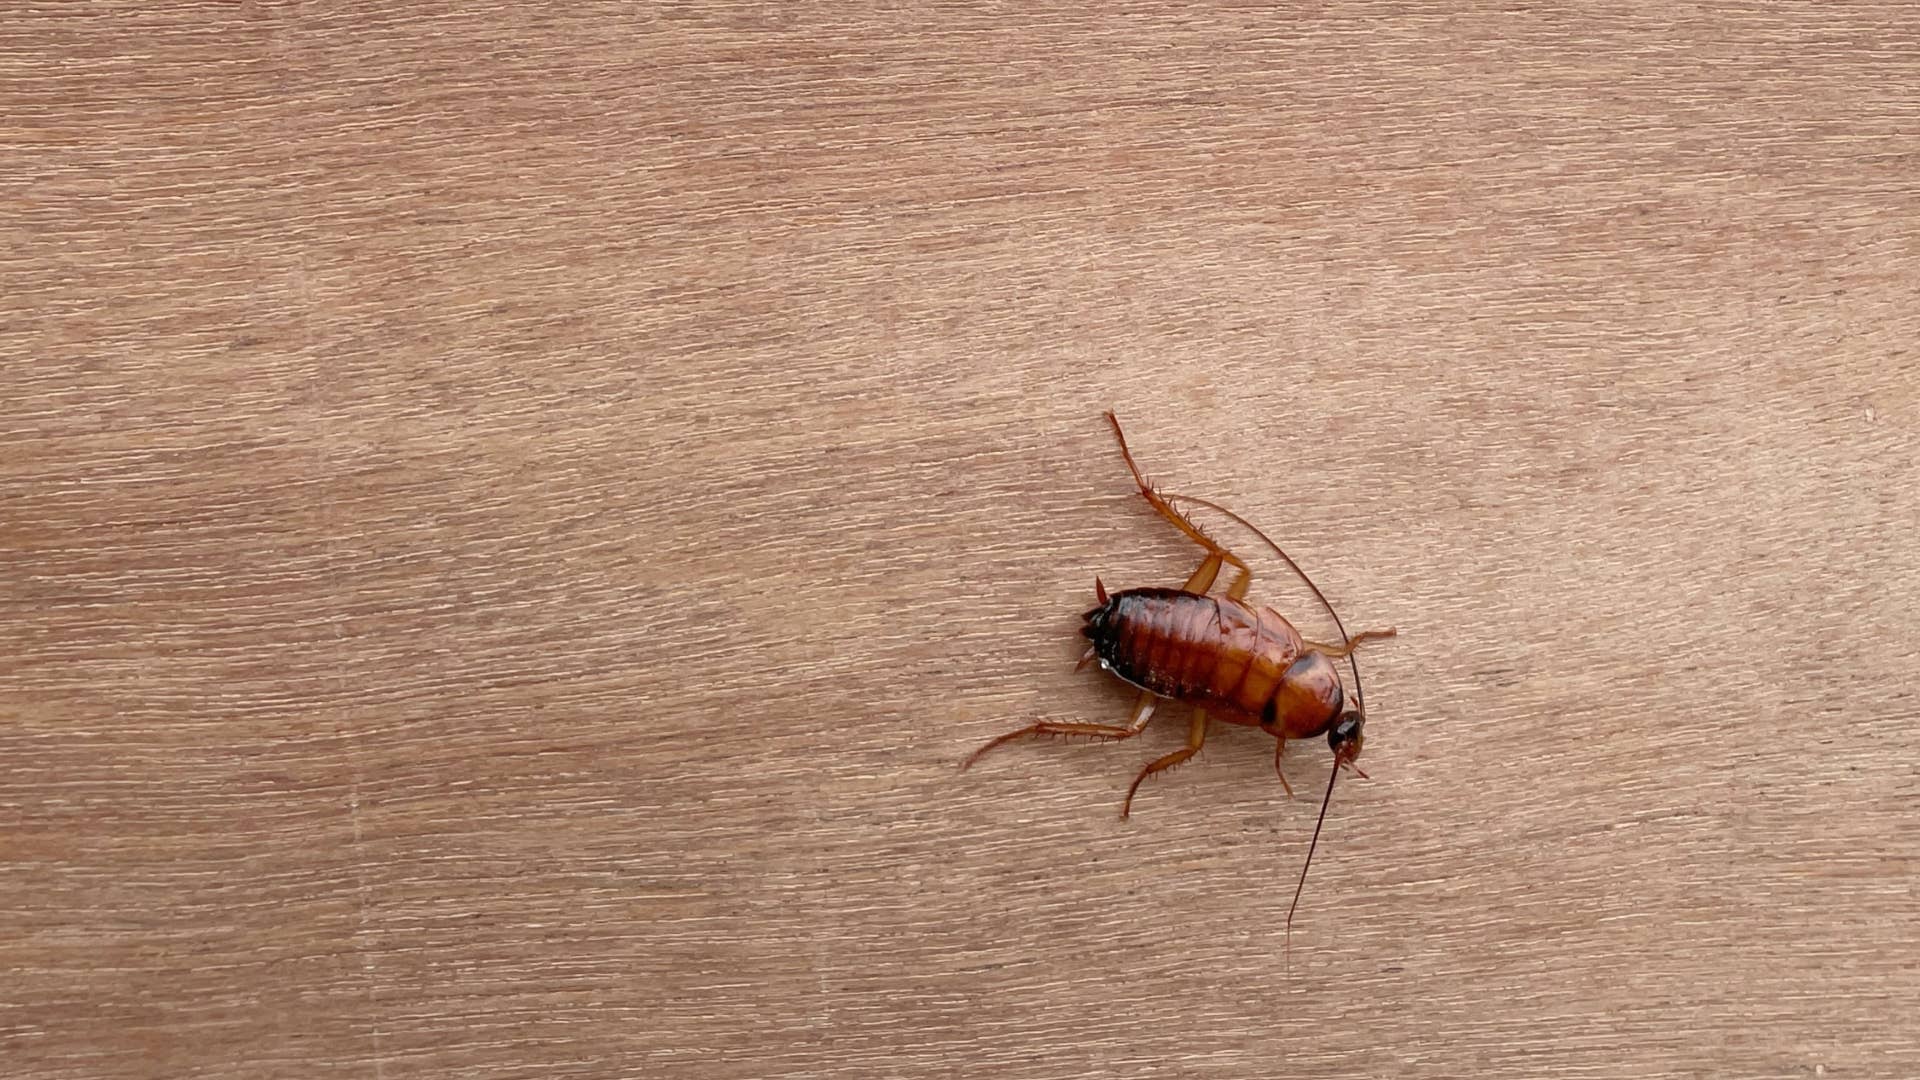 Cockroach Met Gala Red Carpet